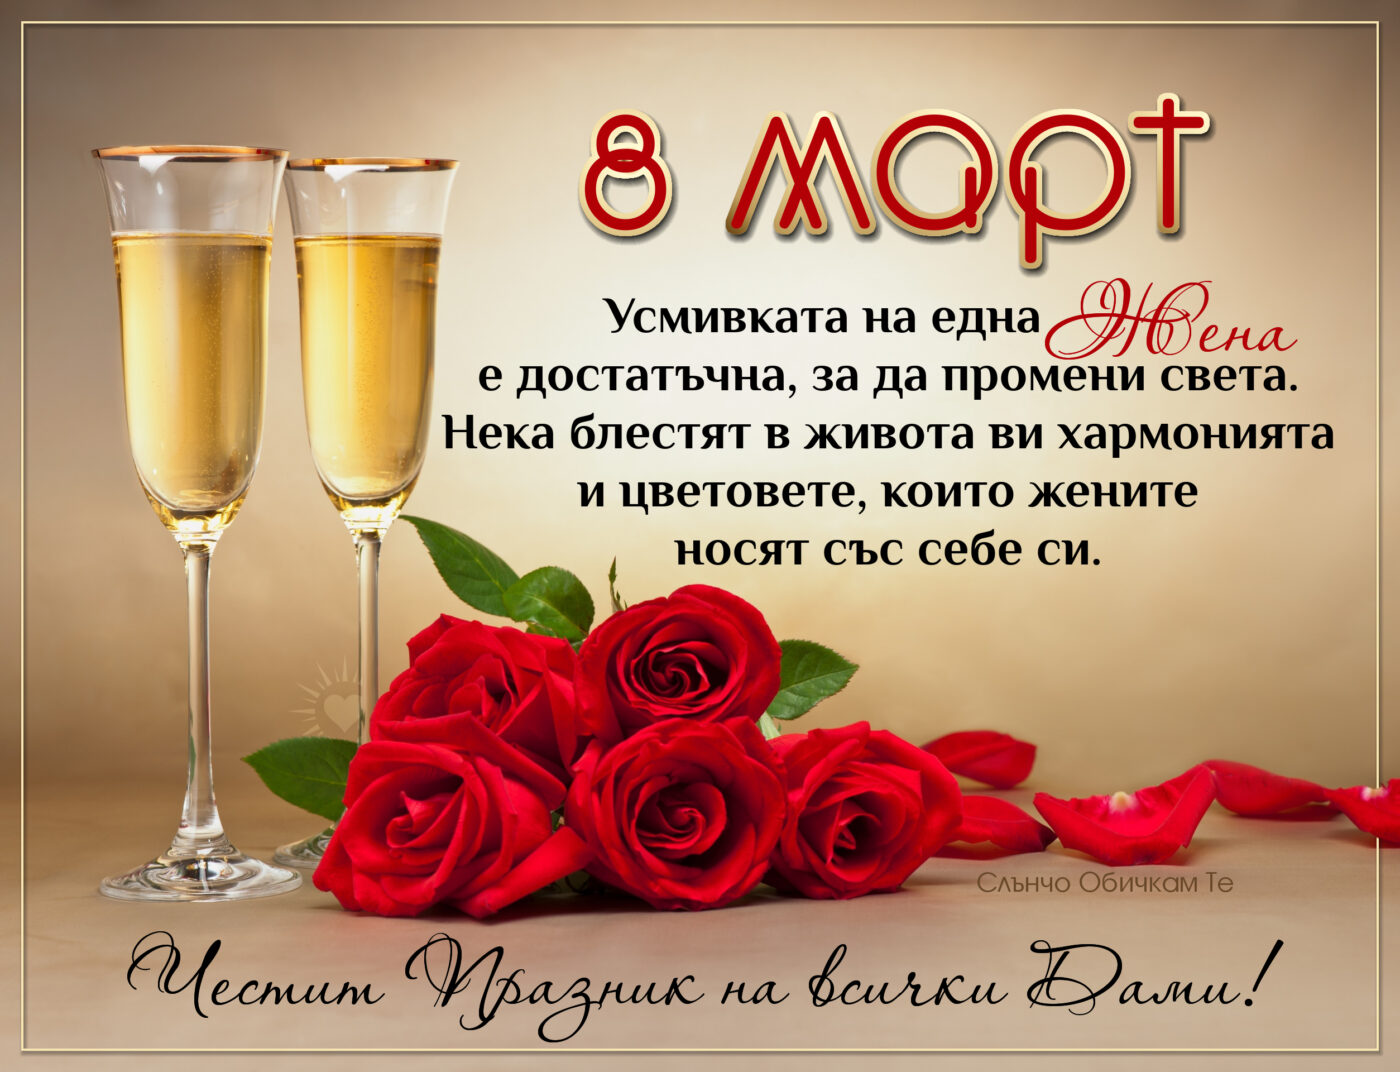 Честит 8 март на всички дами, усмивката на една жена е достатъчна, за да промени света, картички за 8 март, пожелания за 8 март ден на жената, честит празник, рози, шампанско